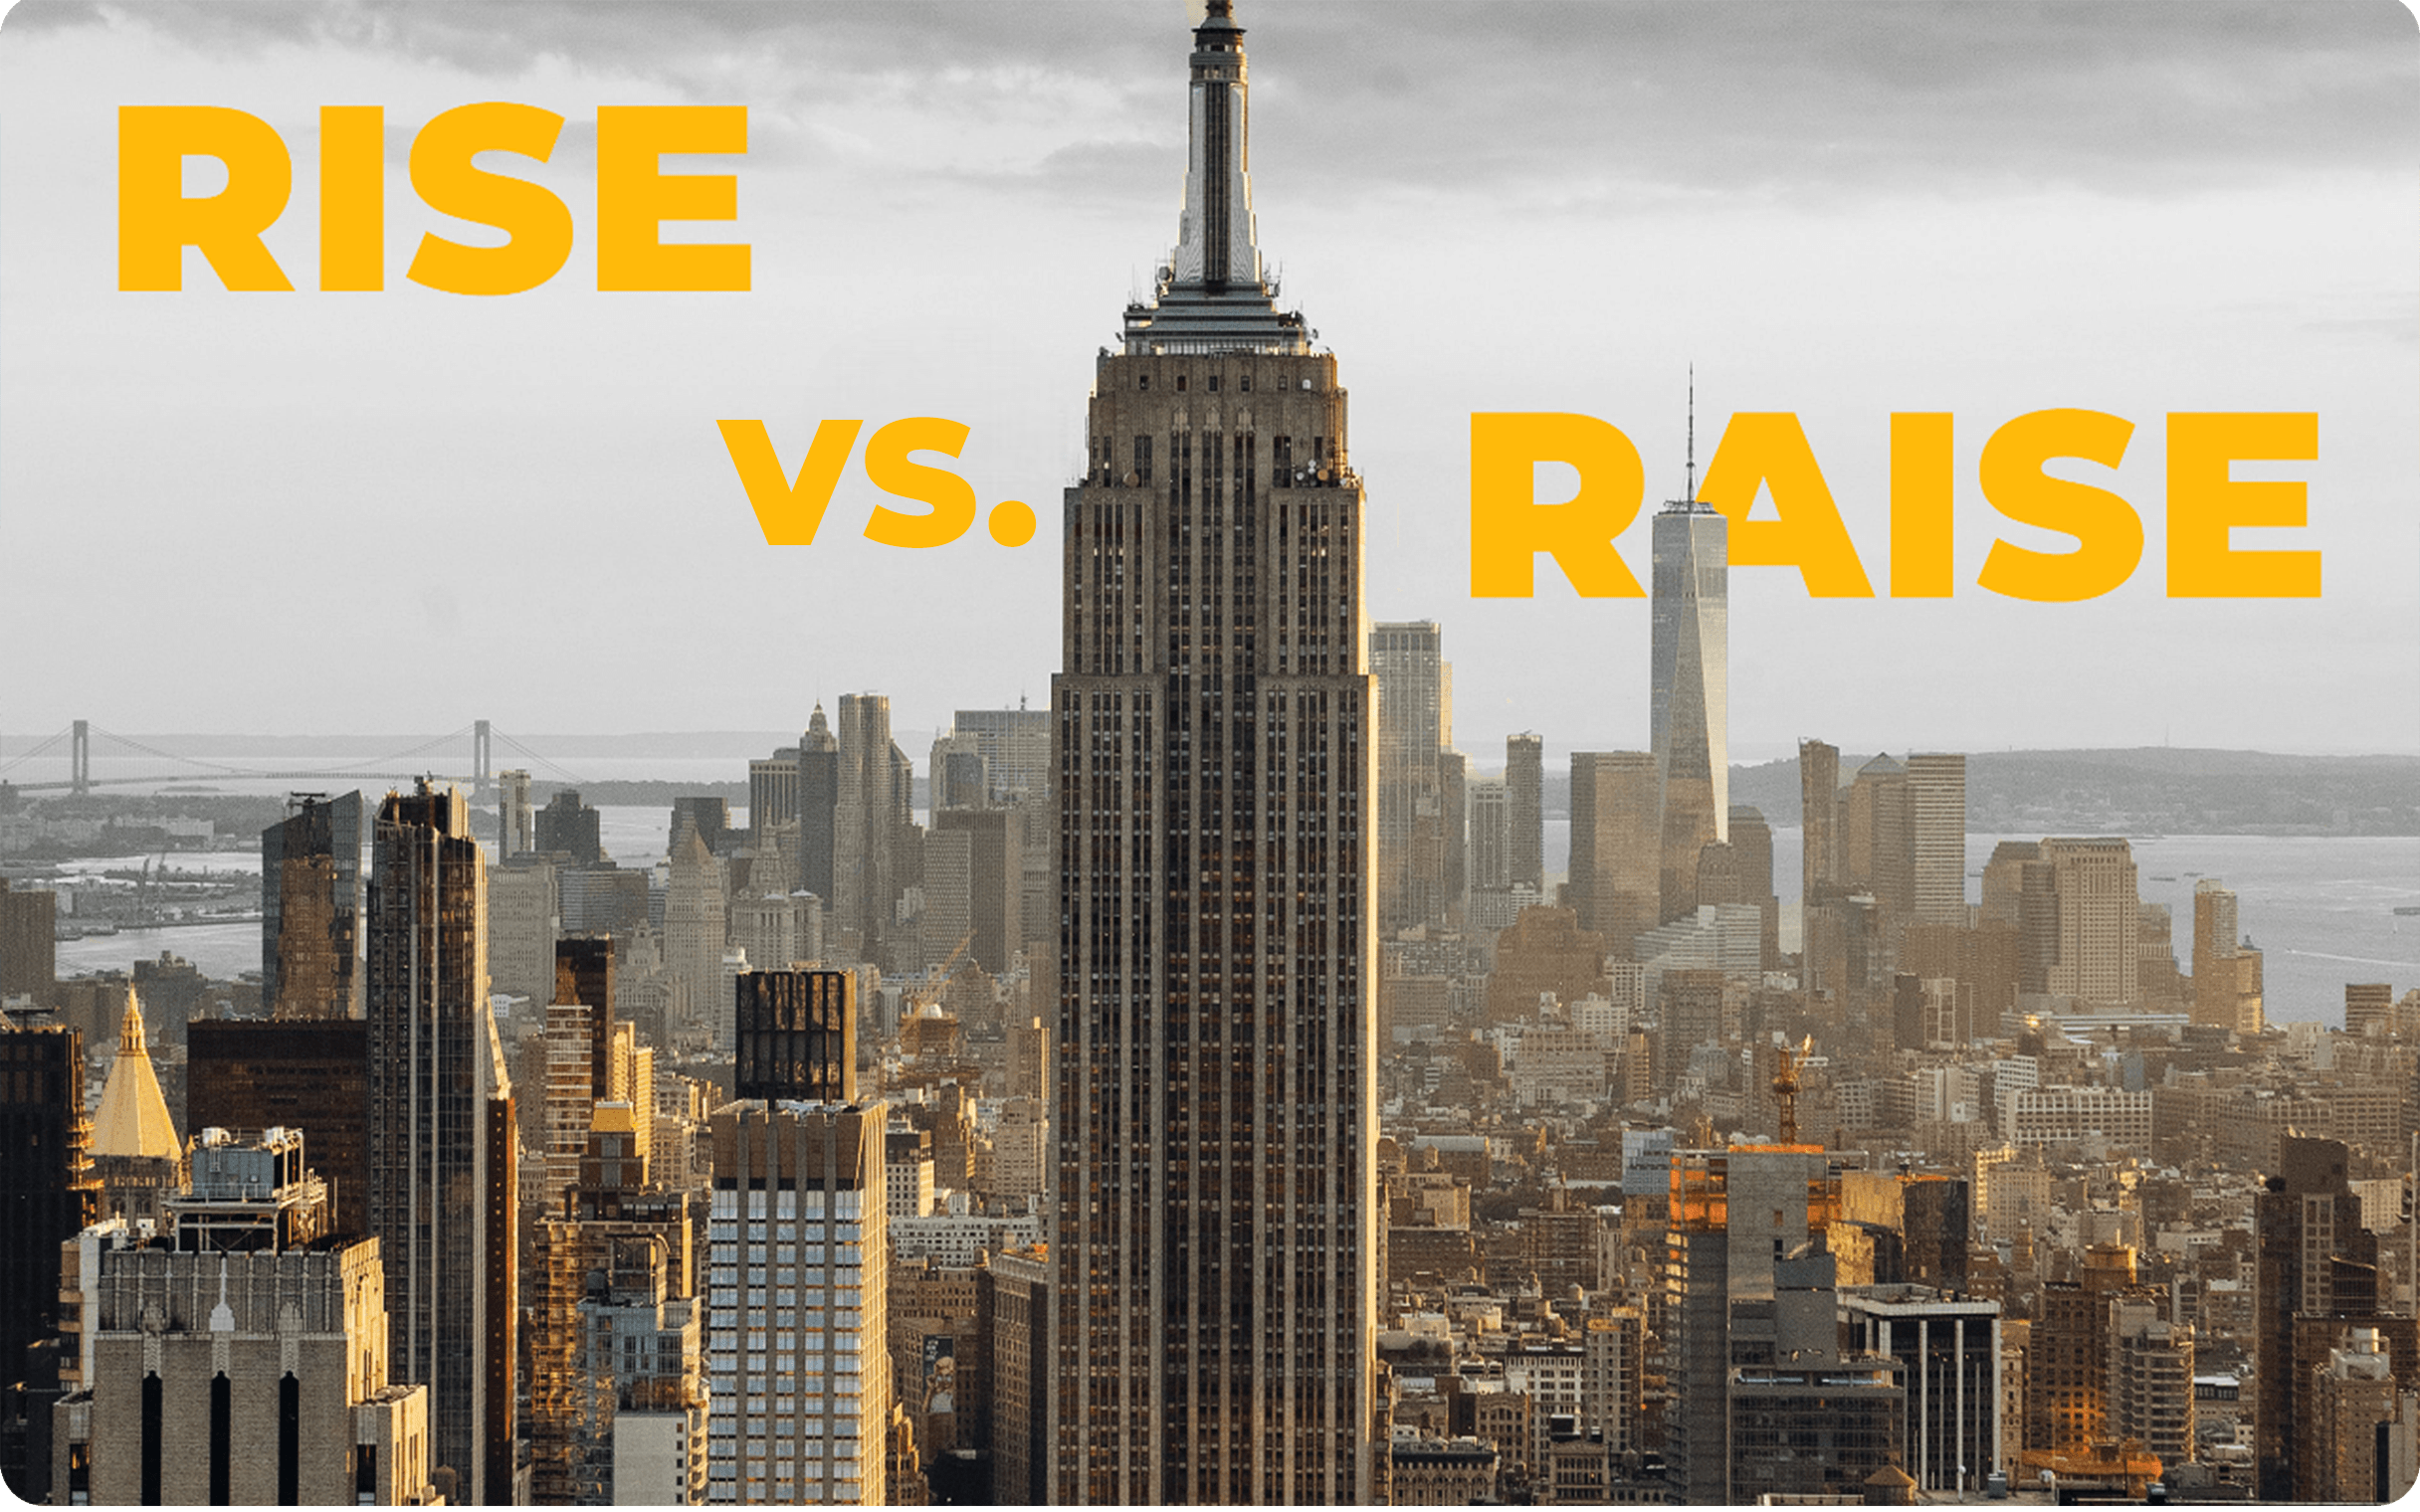 "Raise" vs. "Rise"